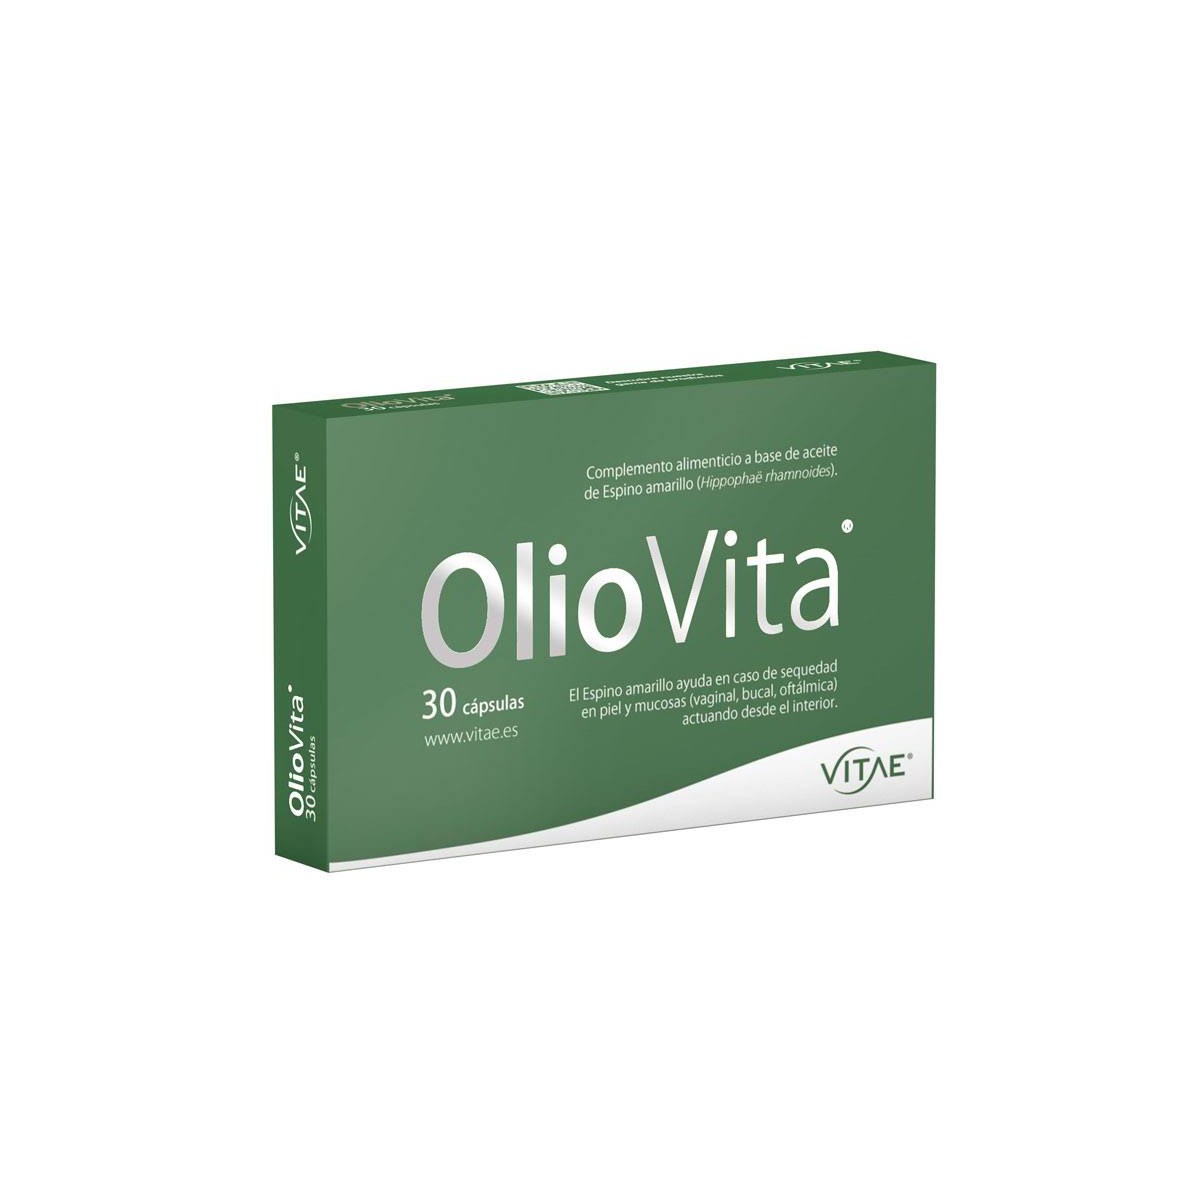 OLIOVITA (30 cpsulas)